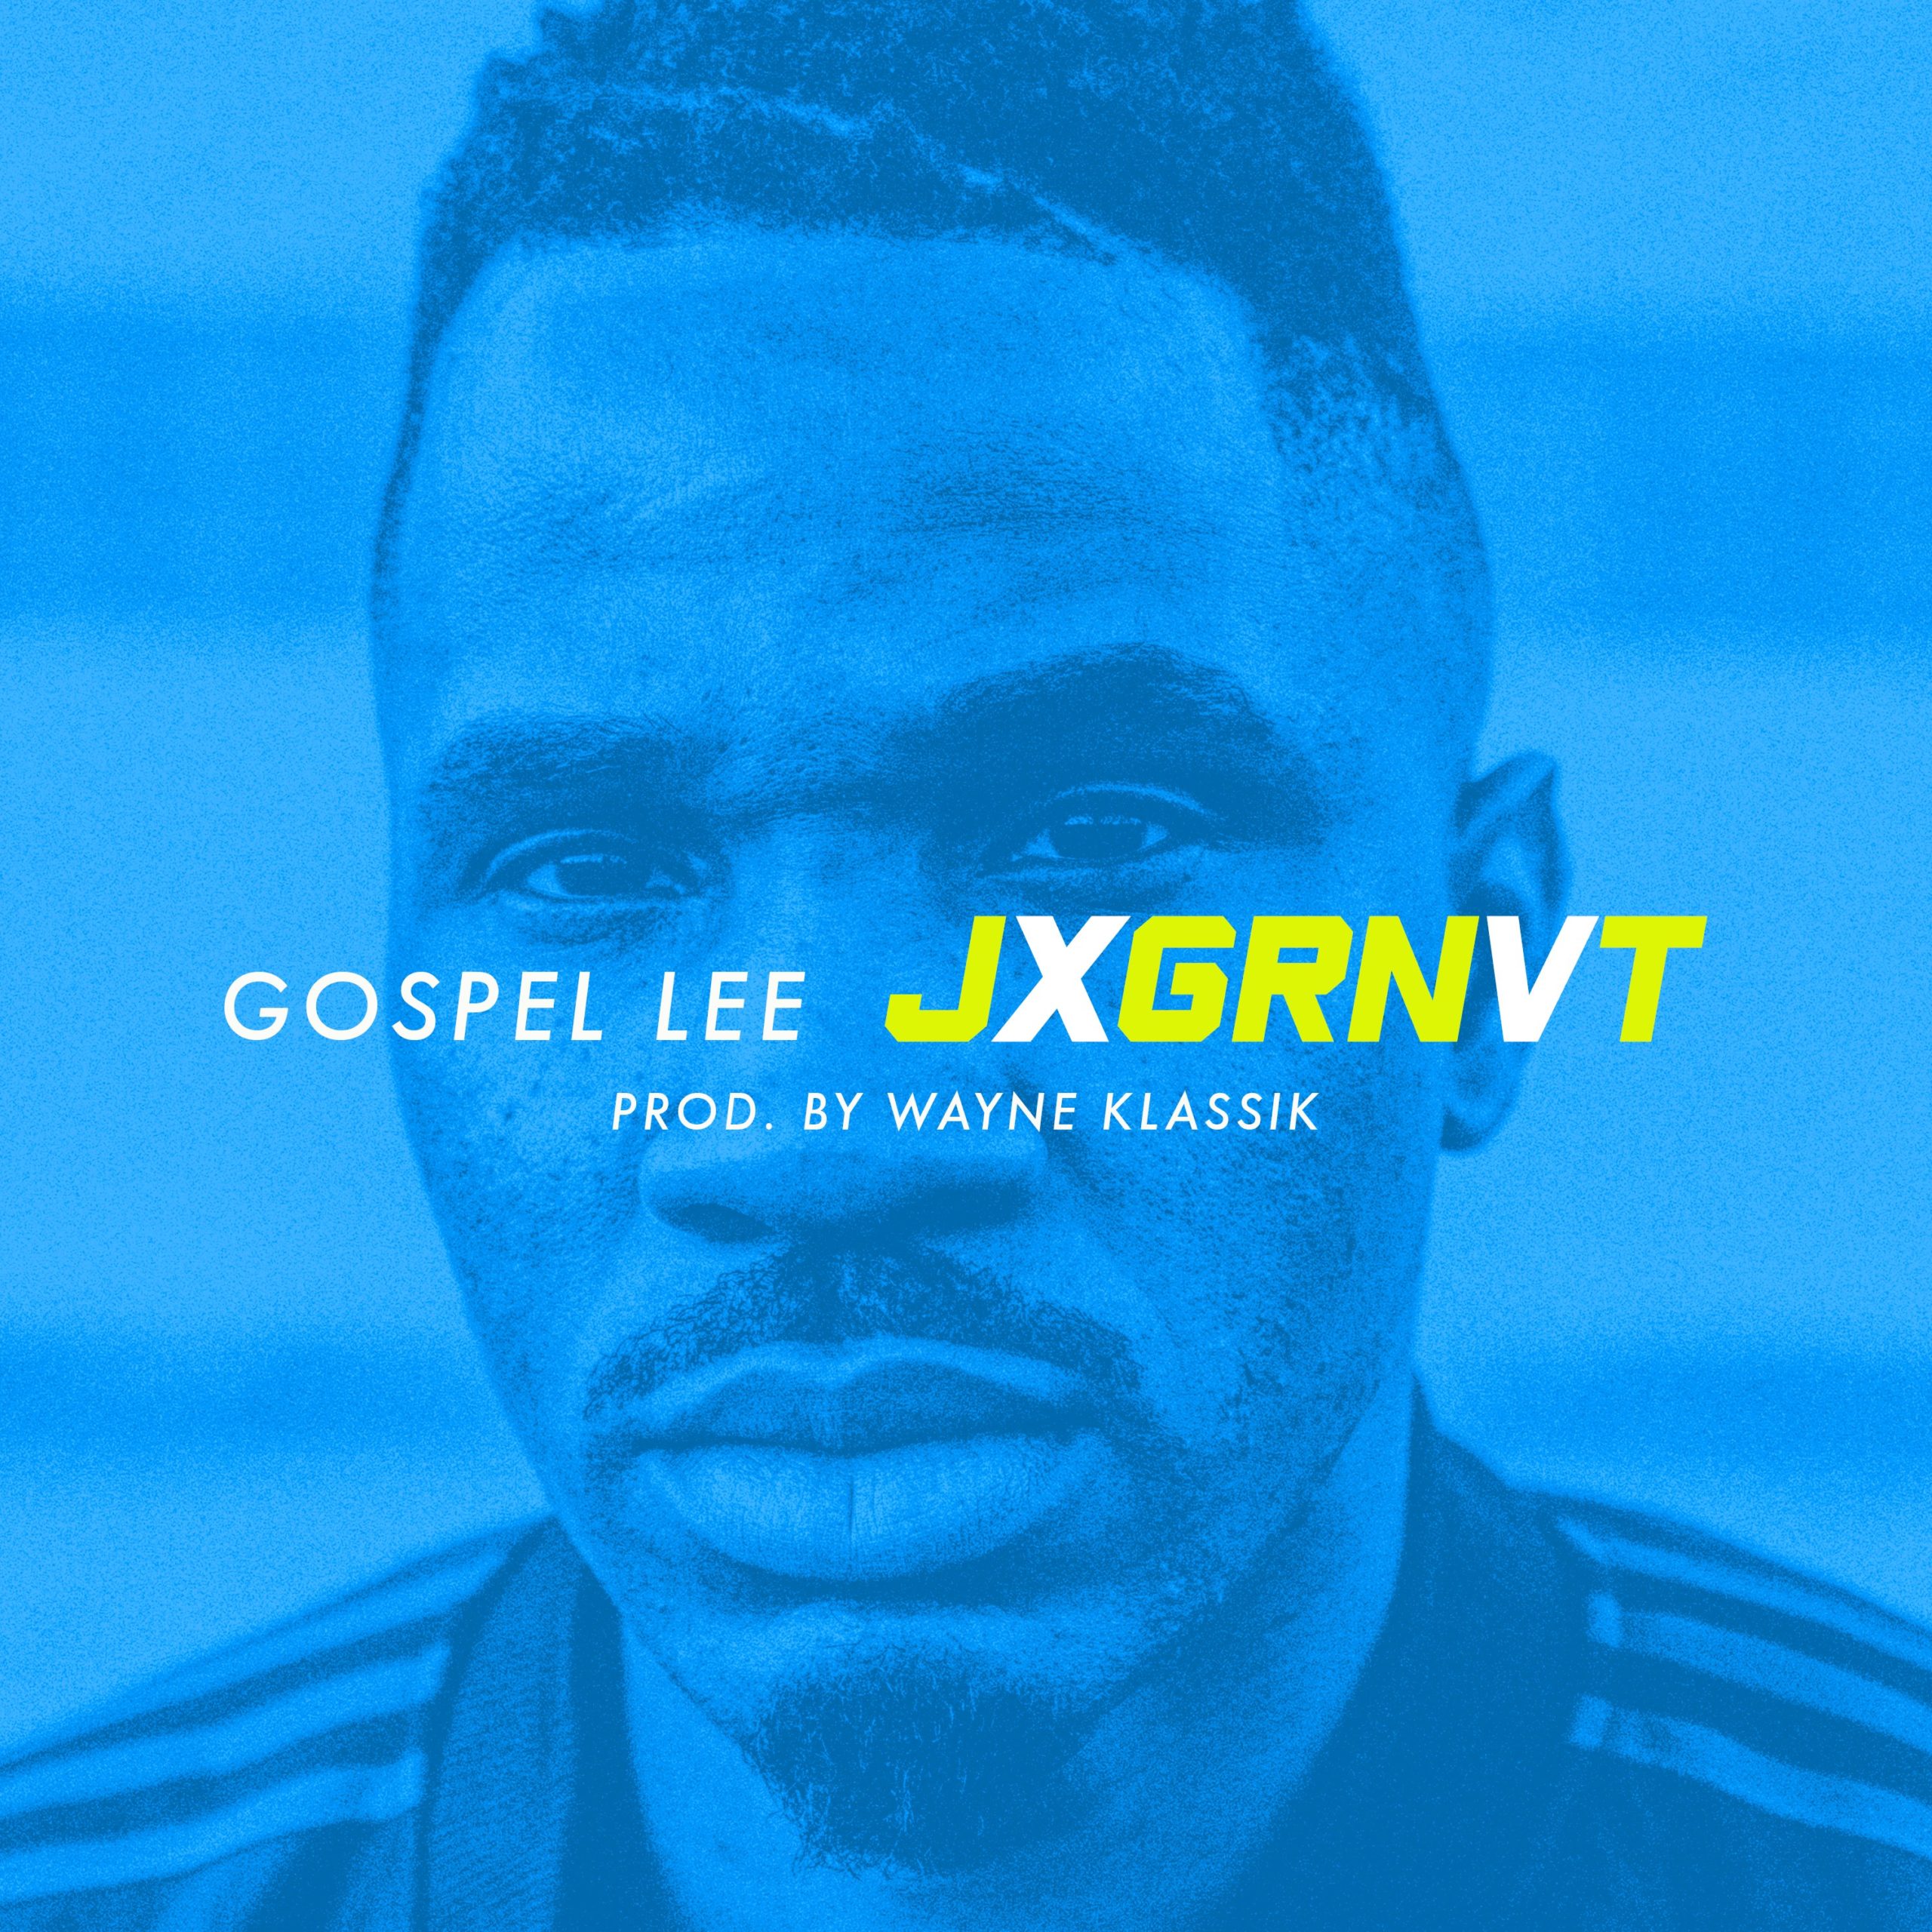 [SODD Premiere] Watch Gospel Lee’s “JXGRNVT” Video